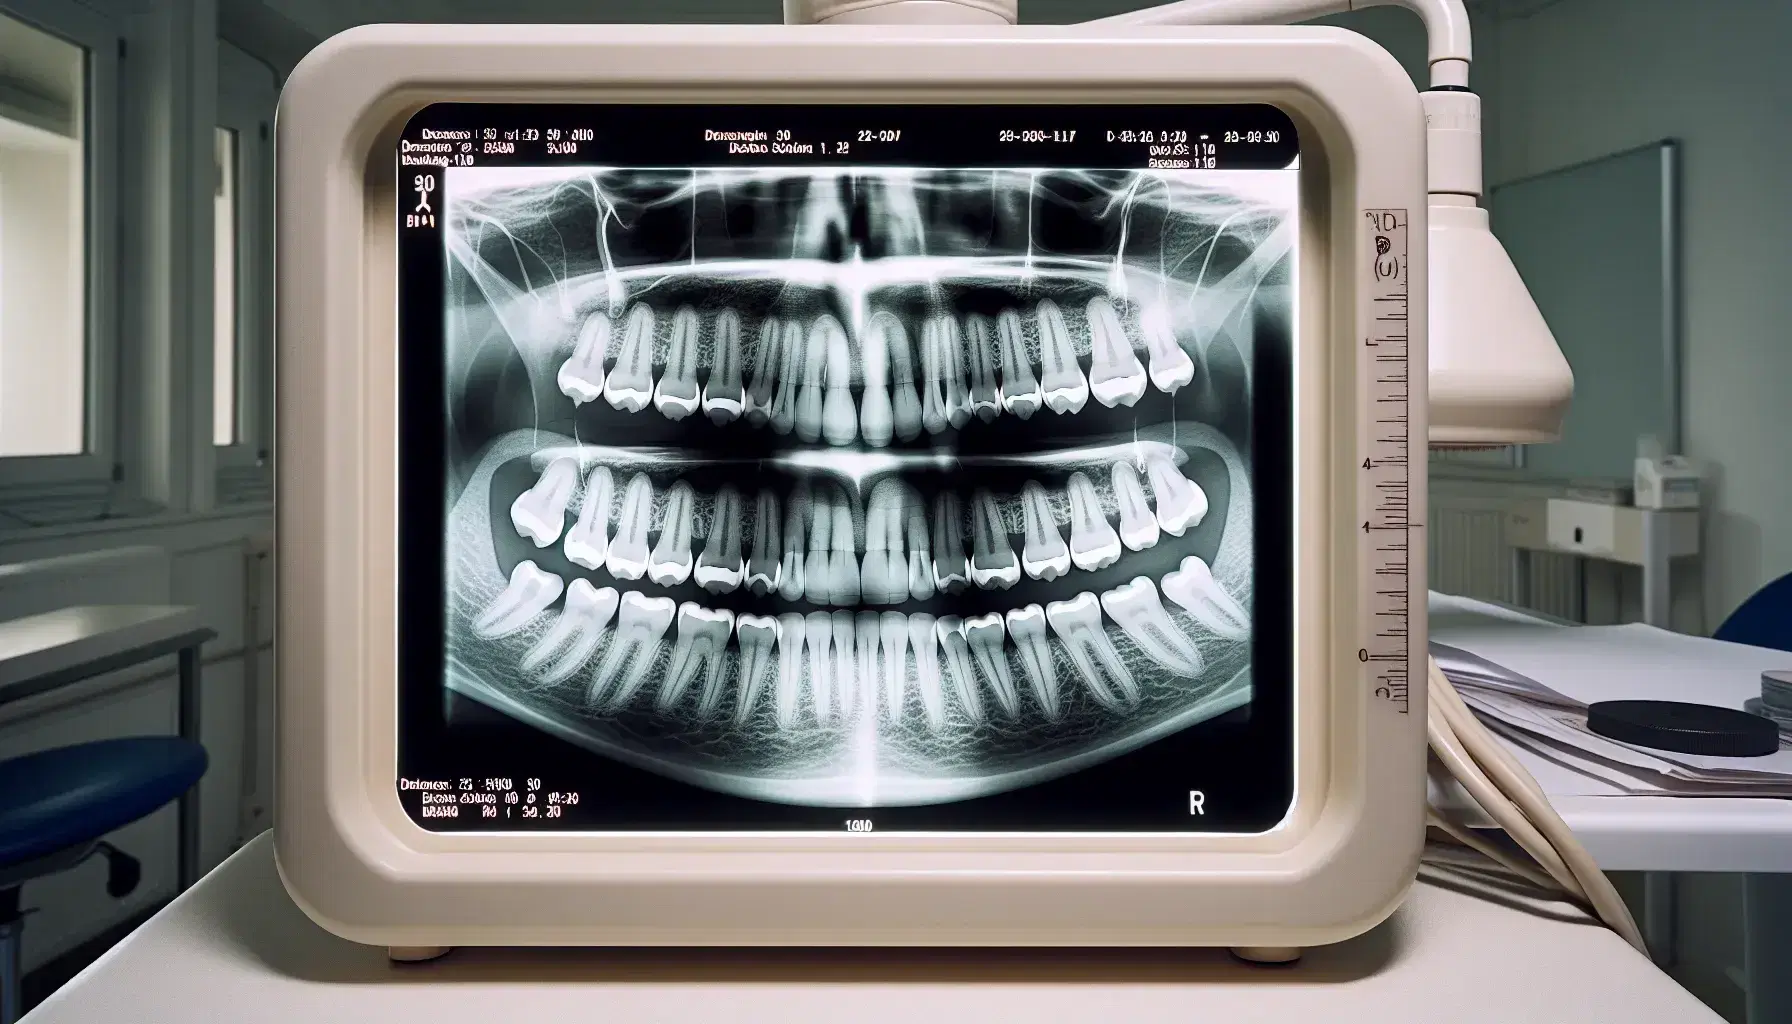 Radiografías dentales en visor luminoso mostrando dientes superiores e inferiores con estructuras óseas, guantes de látex y caja oscura en mesa.